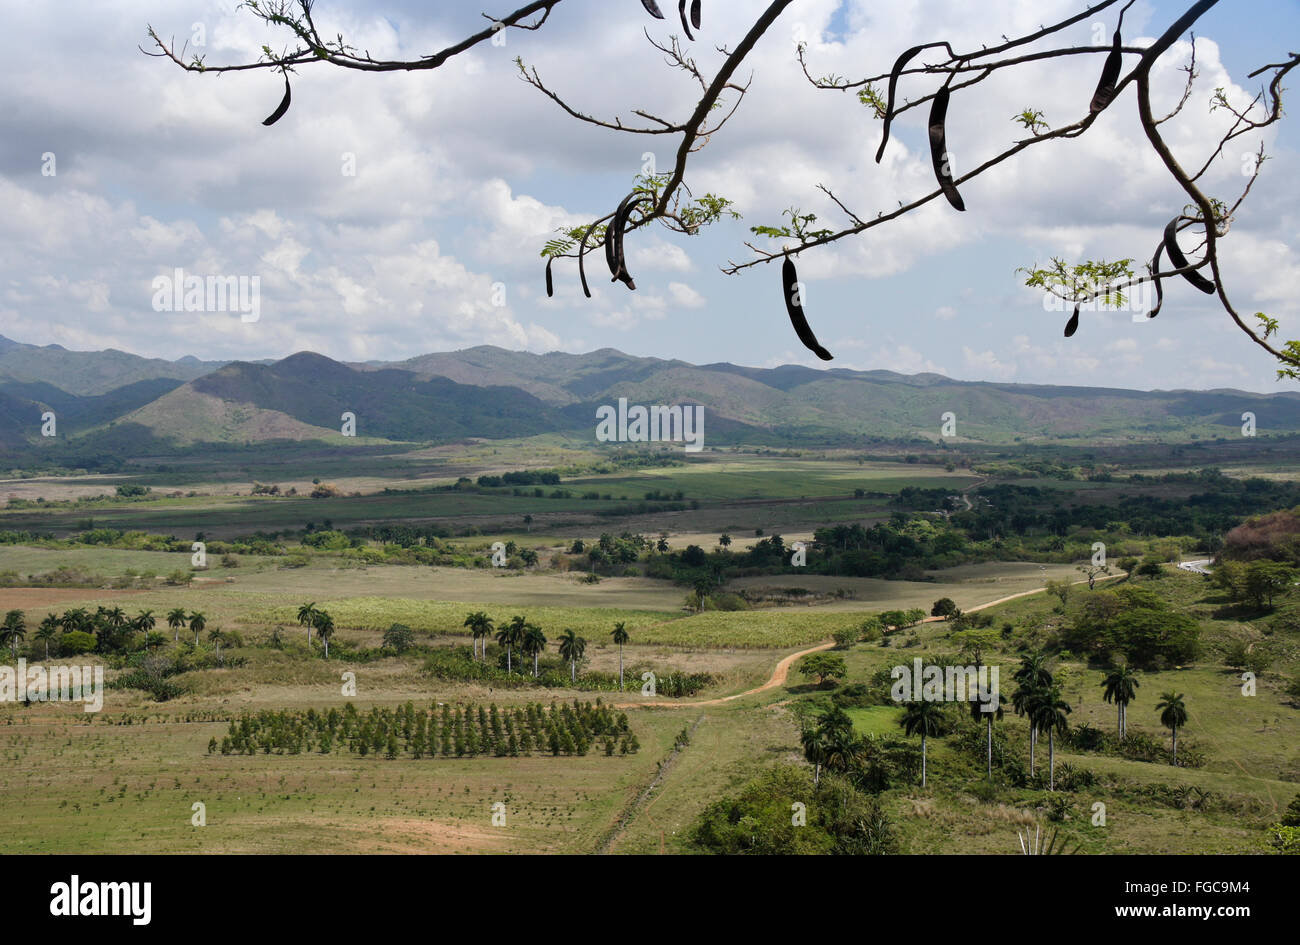 View of Valle de Los Ingenios (Valley of the Sugar Mills) from the Mirador de la Loma del Puerto, Trinidad, Cuba Stock Photo